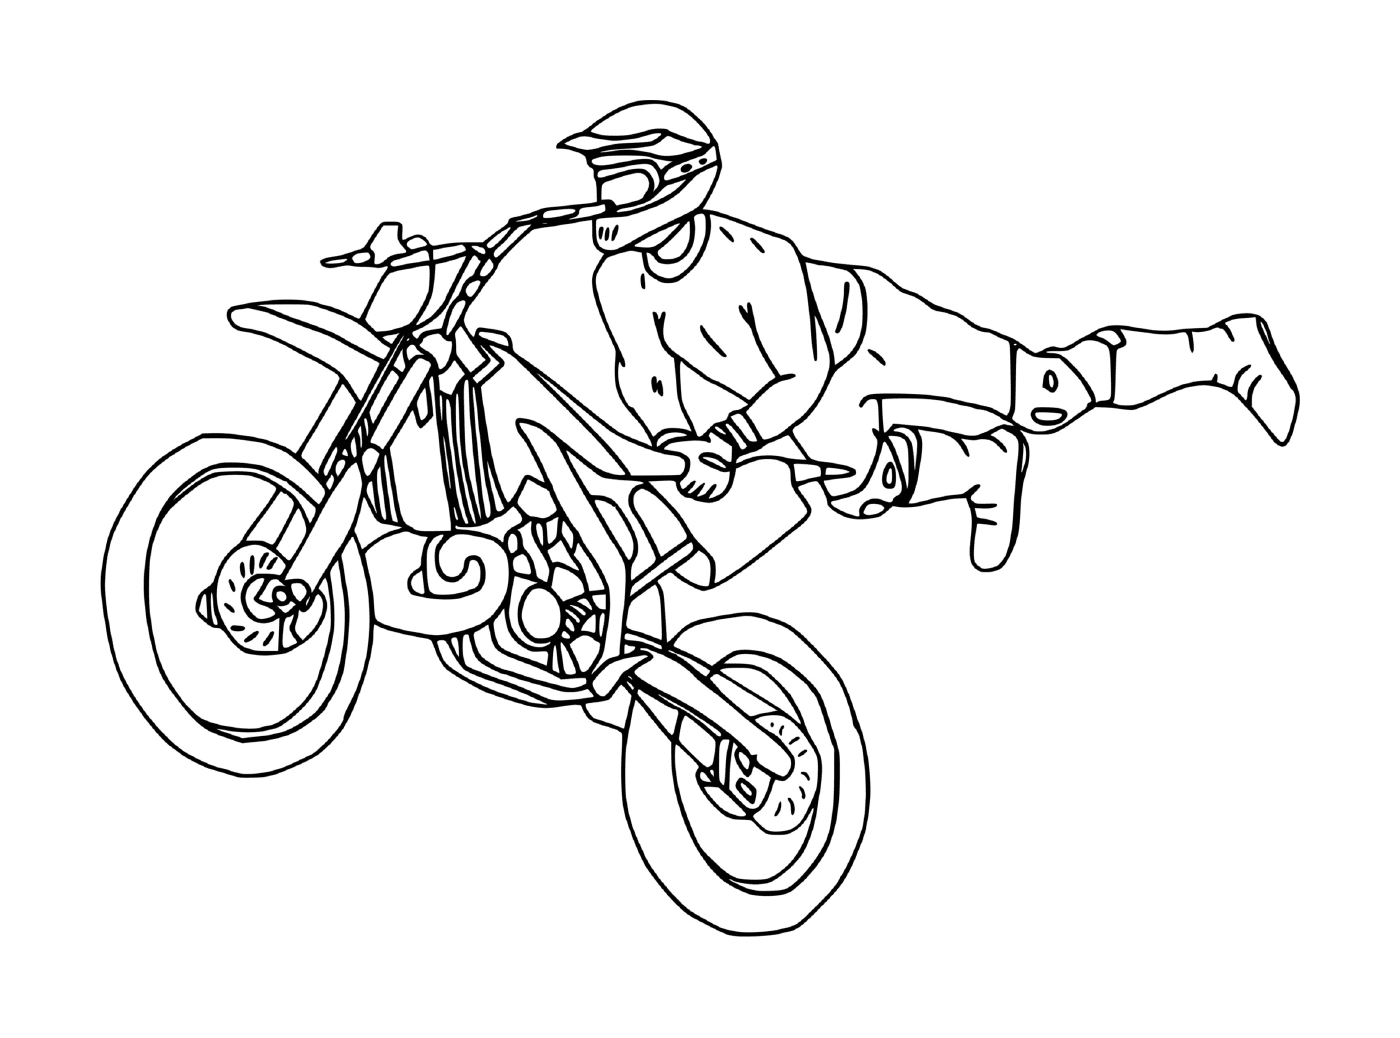  мужчина на кресте мотоцикла 